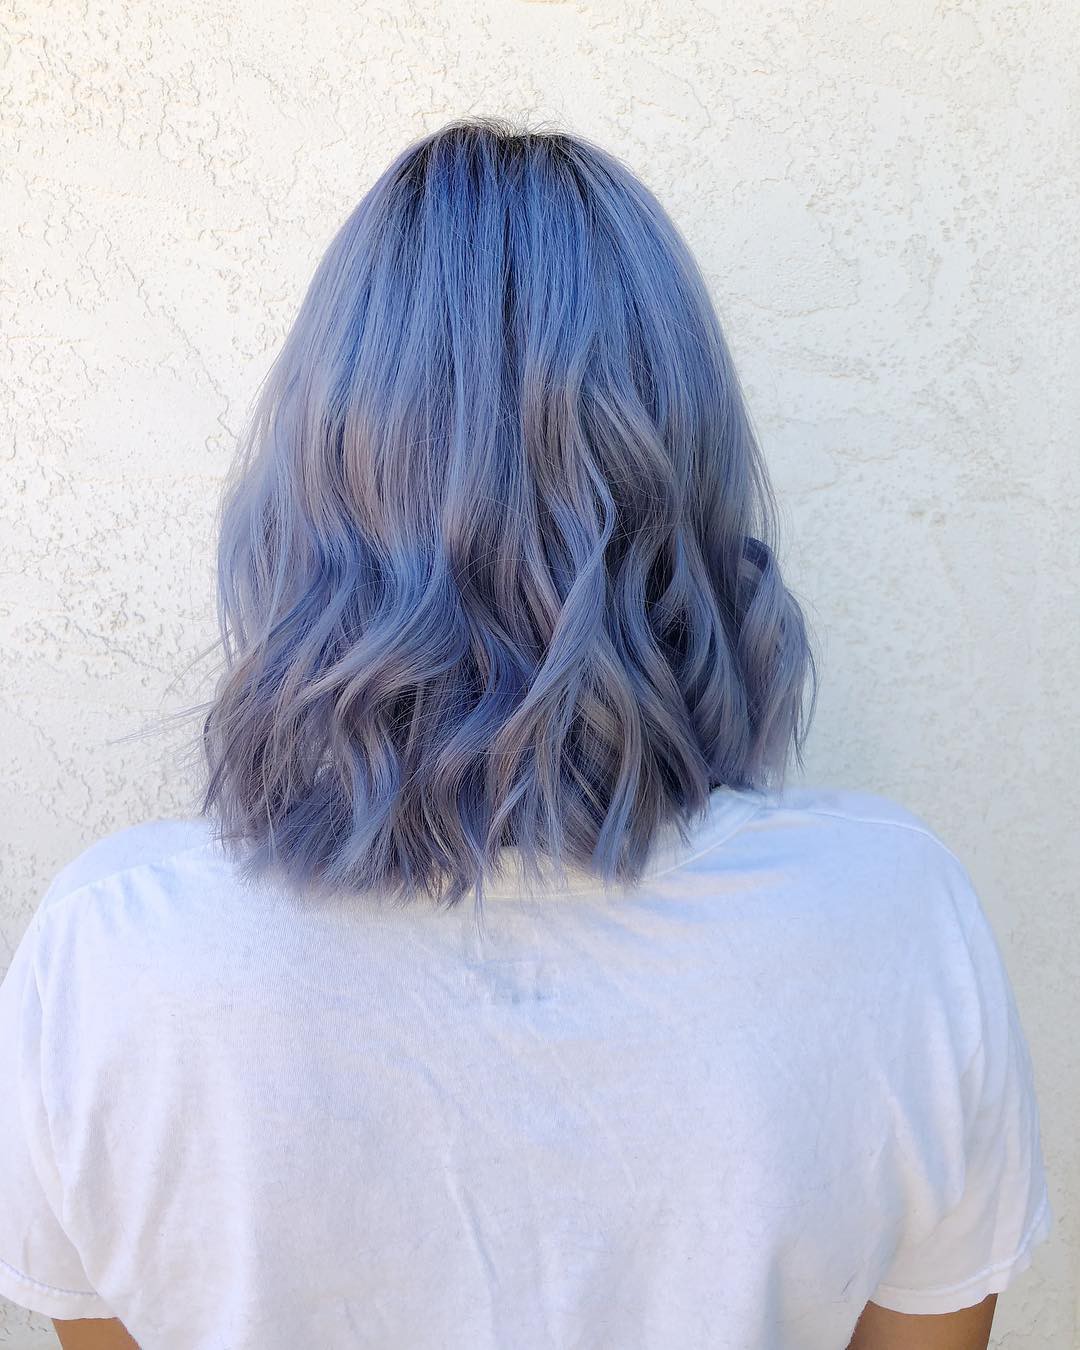 Gam màu nhuộm tóc xanh dương tím là sự kết hợp độc đáo và tươi trẻ của hai màu sắc nổi bật. Hãy xem những hình ảnh liên quan để khám phá sức hút và tinh tế của gam màu này. Bạn sẽ thấy rằng, đây là một sự lựa chọn đáng cân nhắc cho phong cách của bạn.